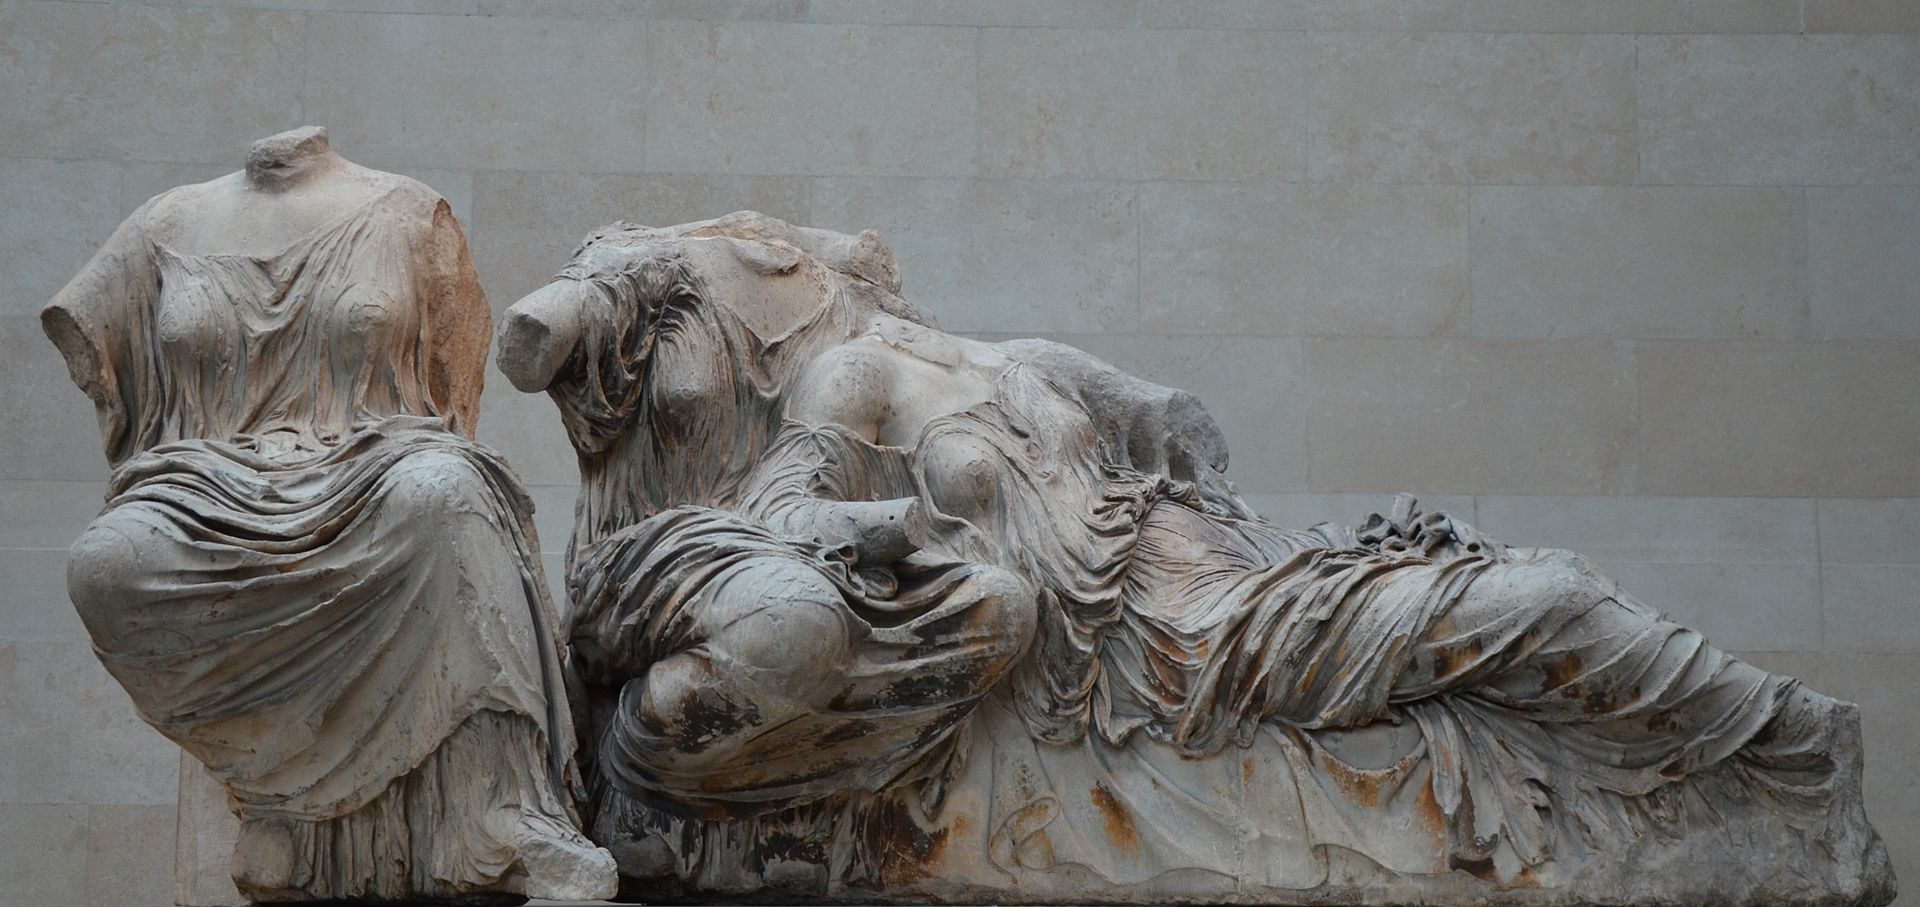 El Museo Británico sostiene que las esculturas del siglo V a. C. fueron adquiridas mediante un acuerdo legal con el Imperio Otomano. Grecia dice que fueron robados.